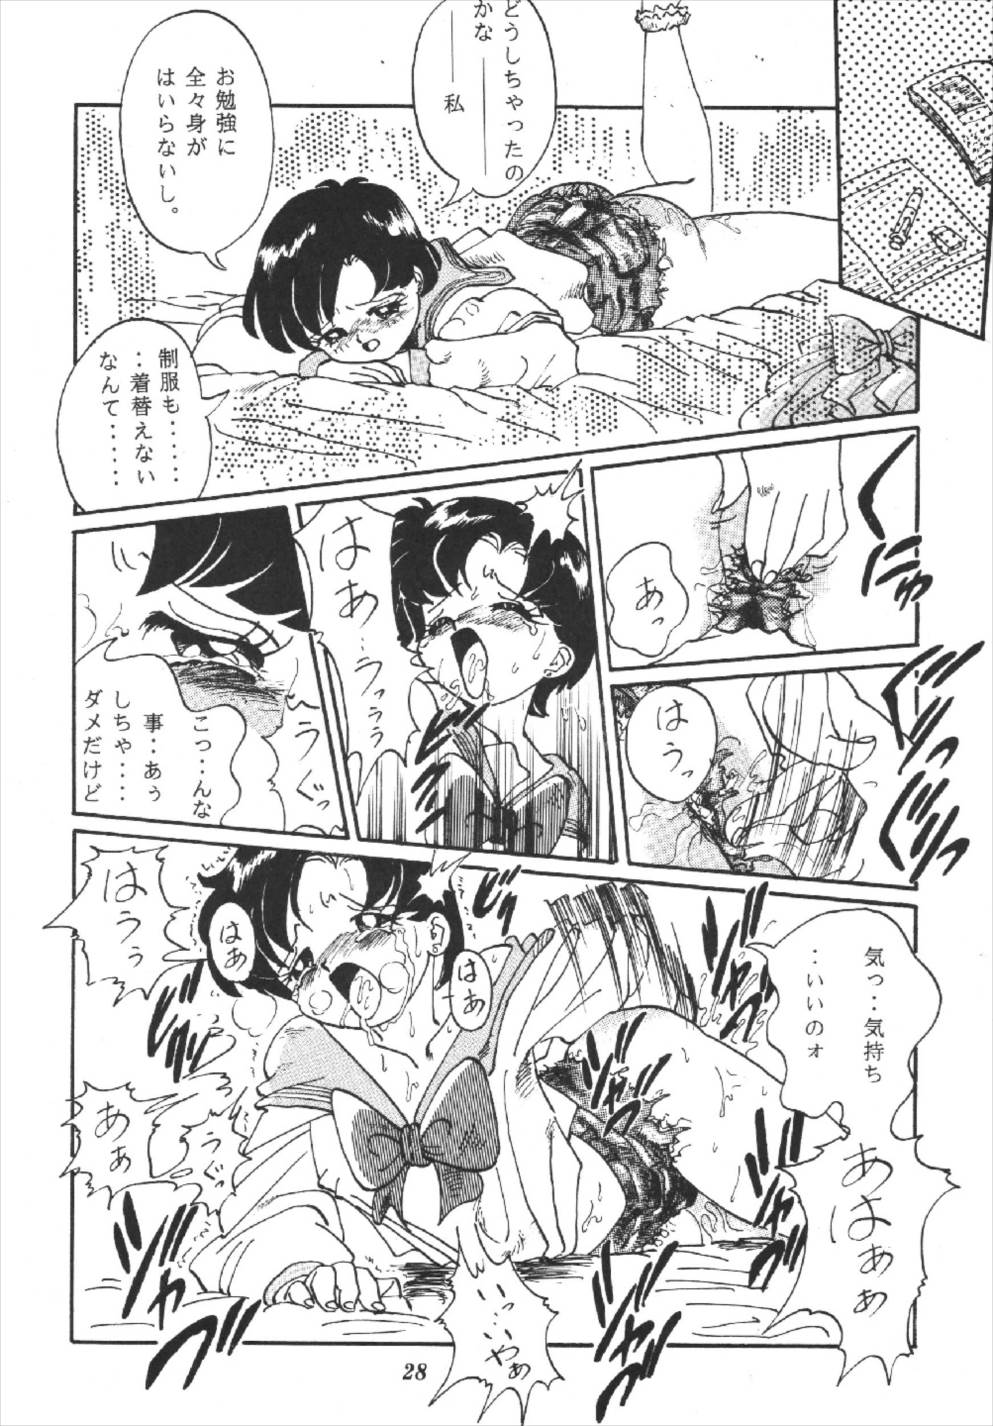 (CR16) [RPG Company] Tsuki no Shiru (Bishoujo Senshi Sailor Moon) page 28 full